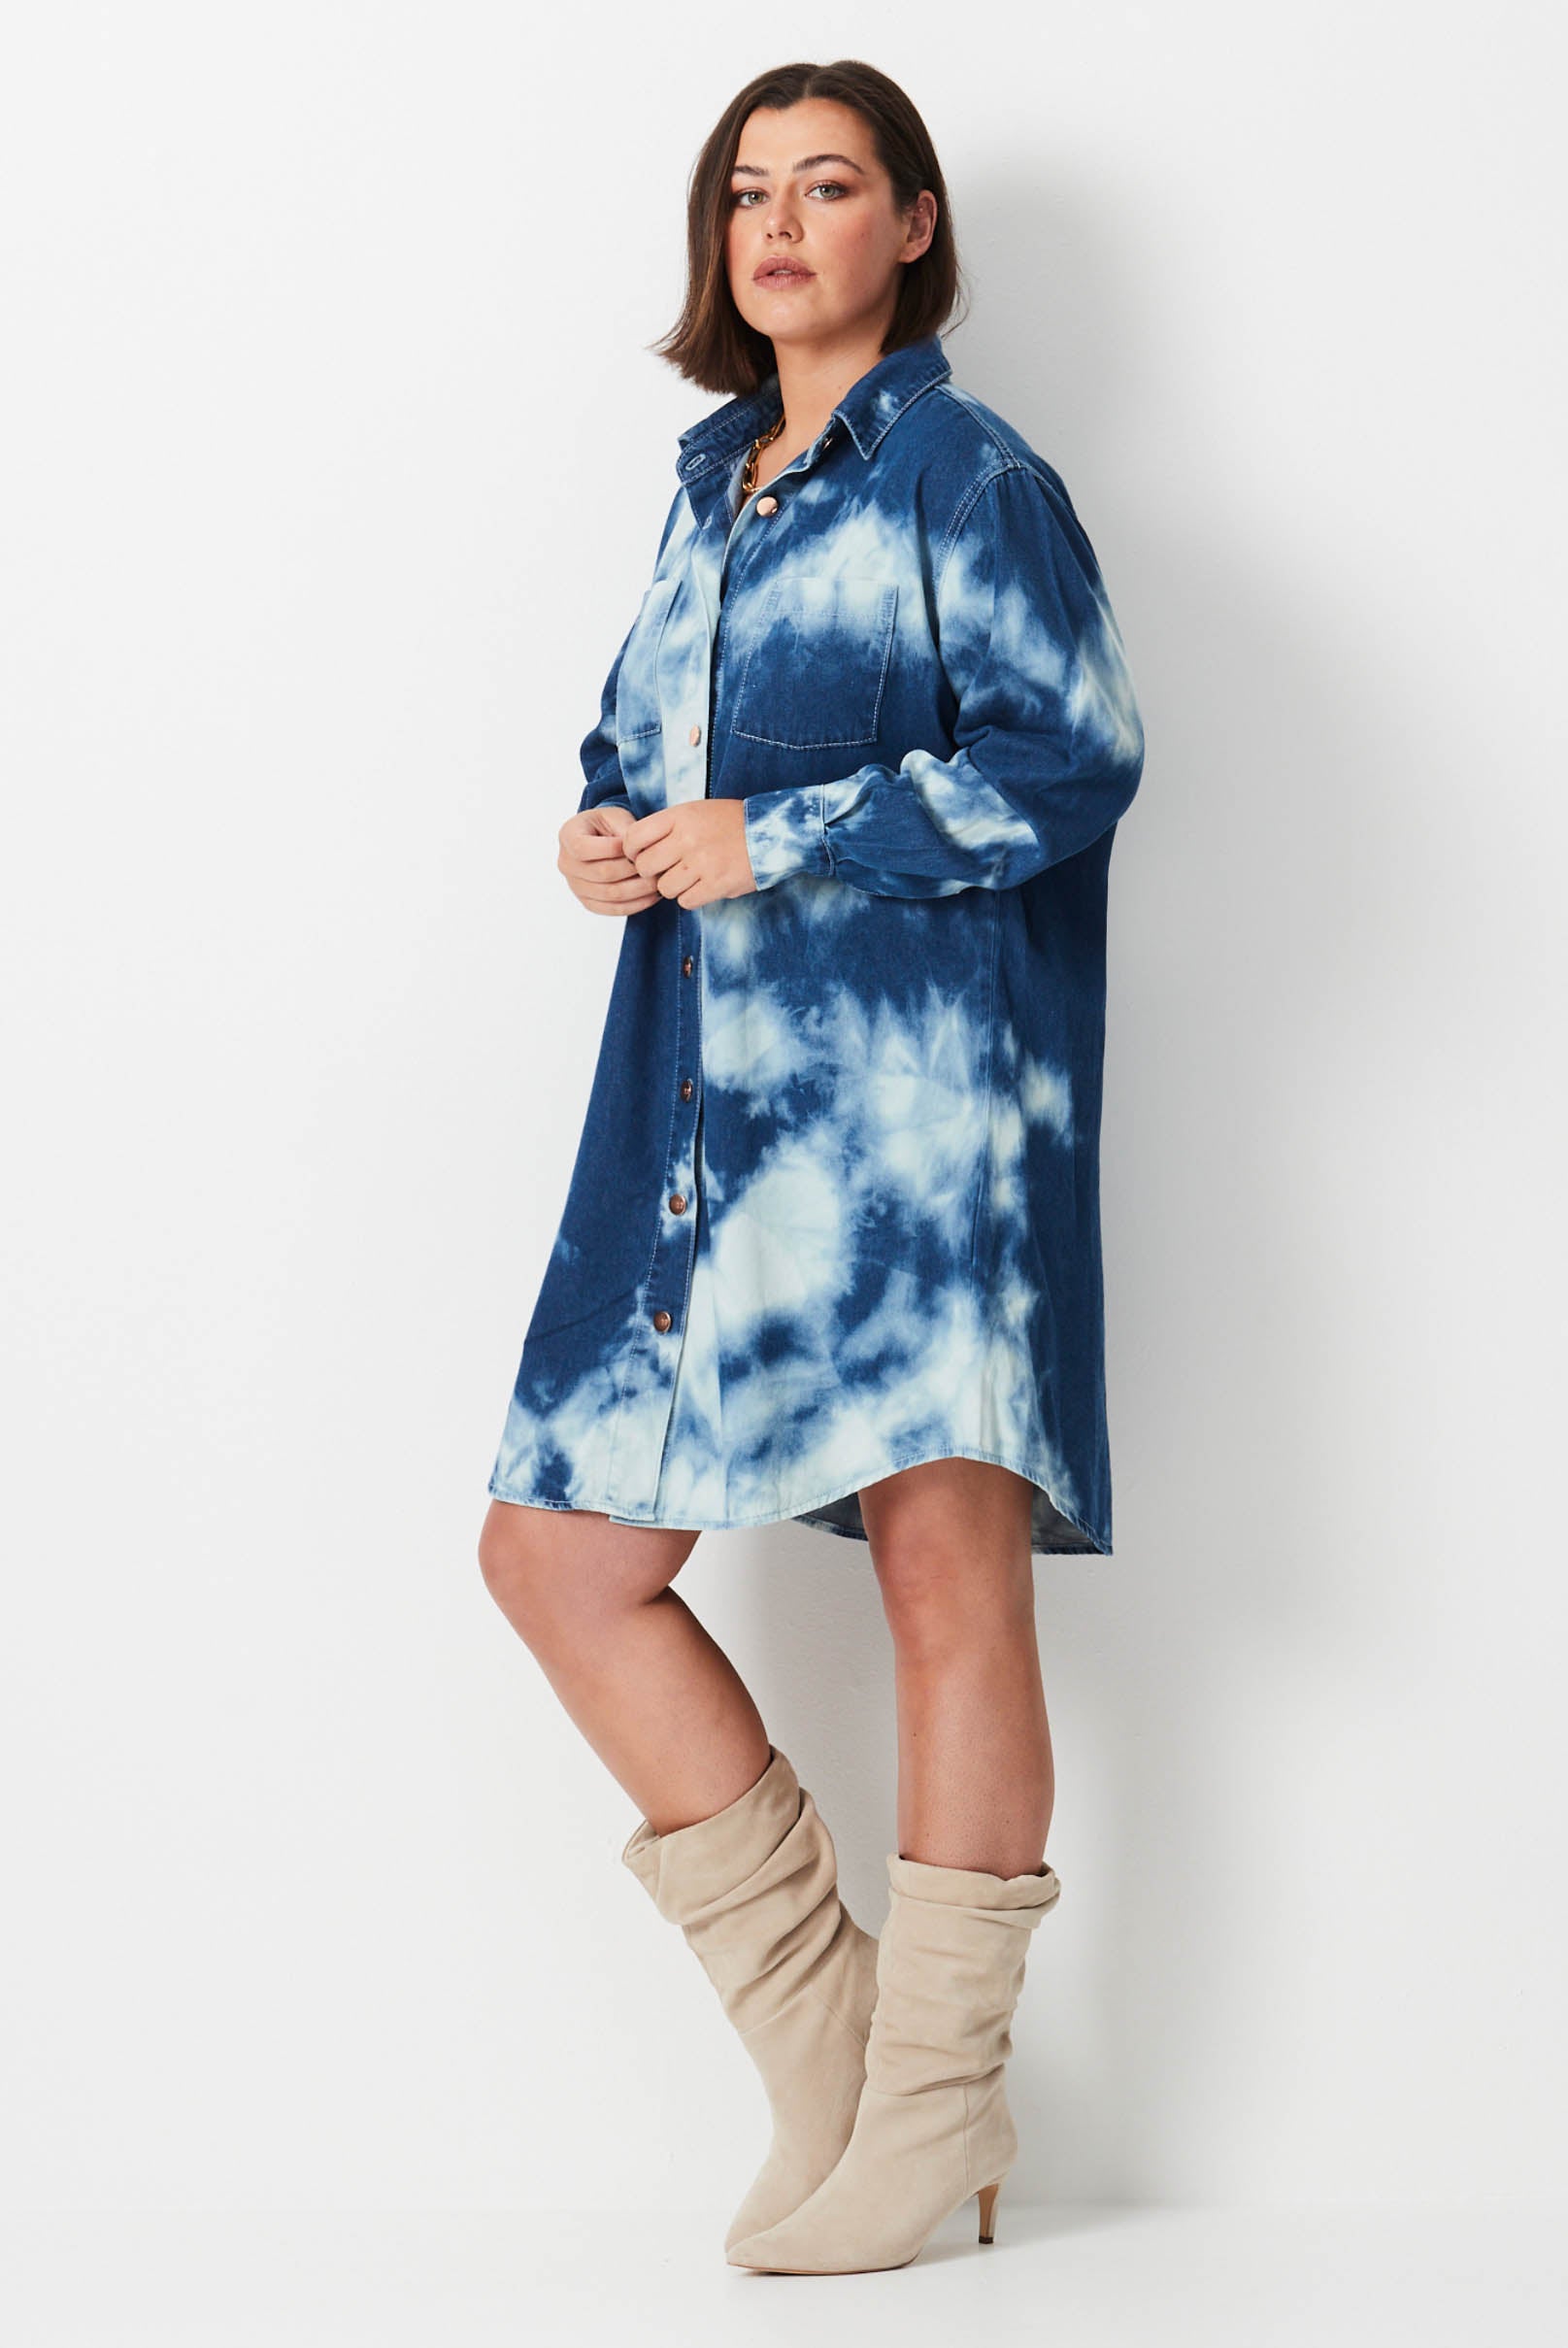 Model wears blue and white shibori tie dye plus size denim shirt dress 